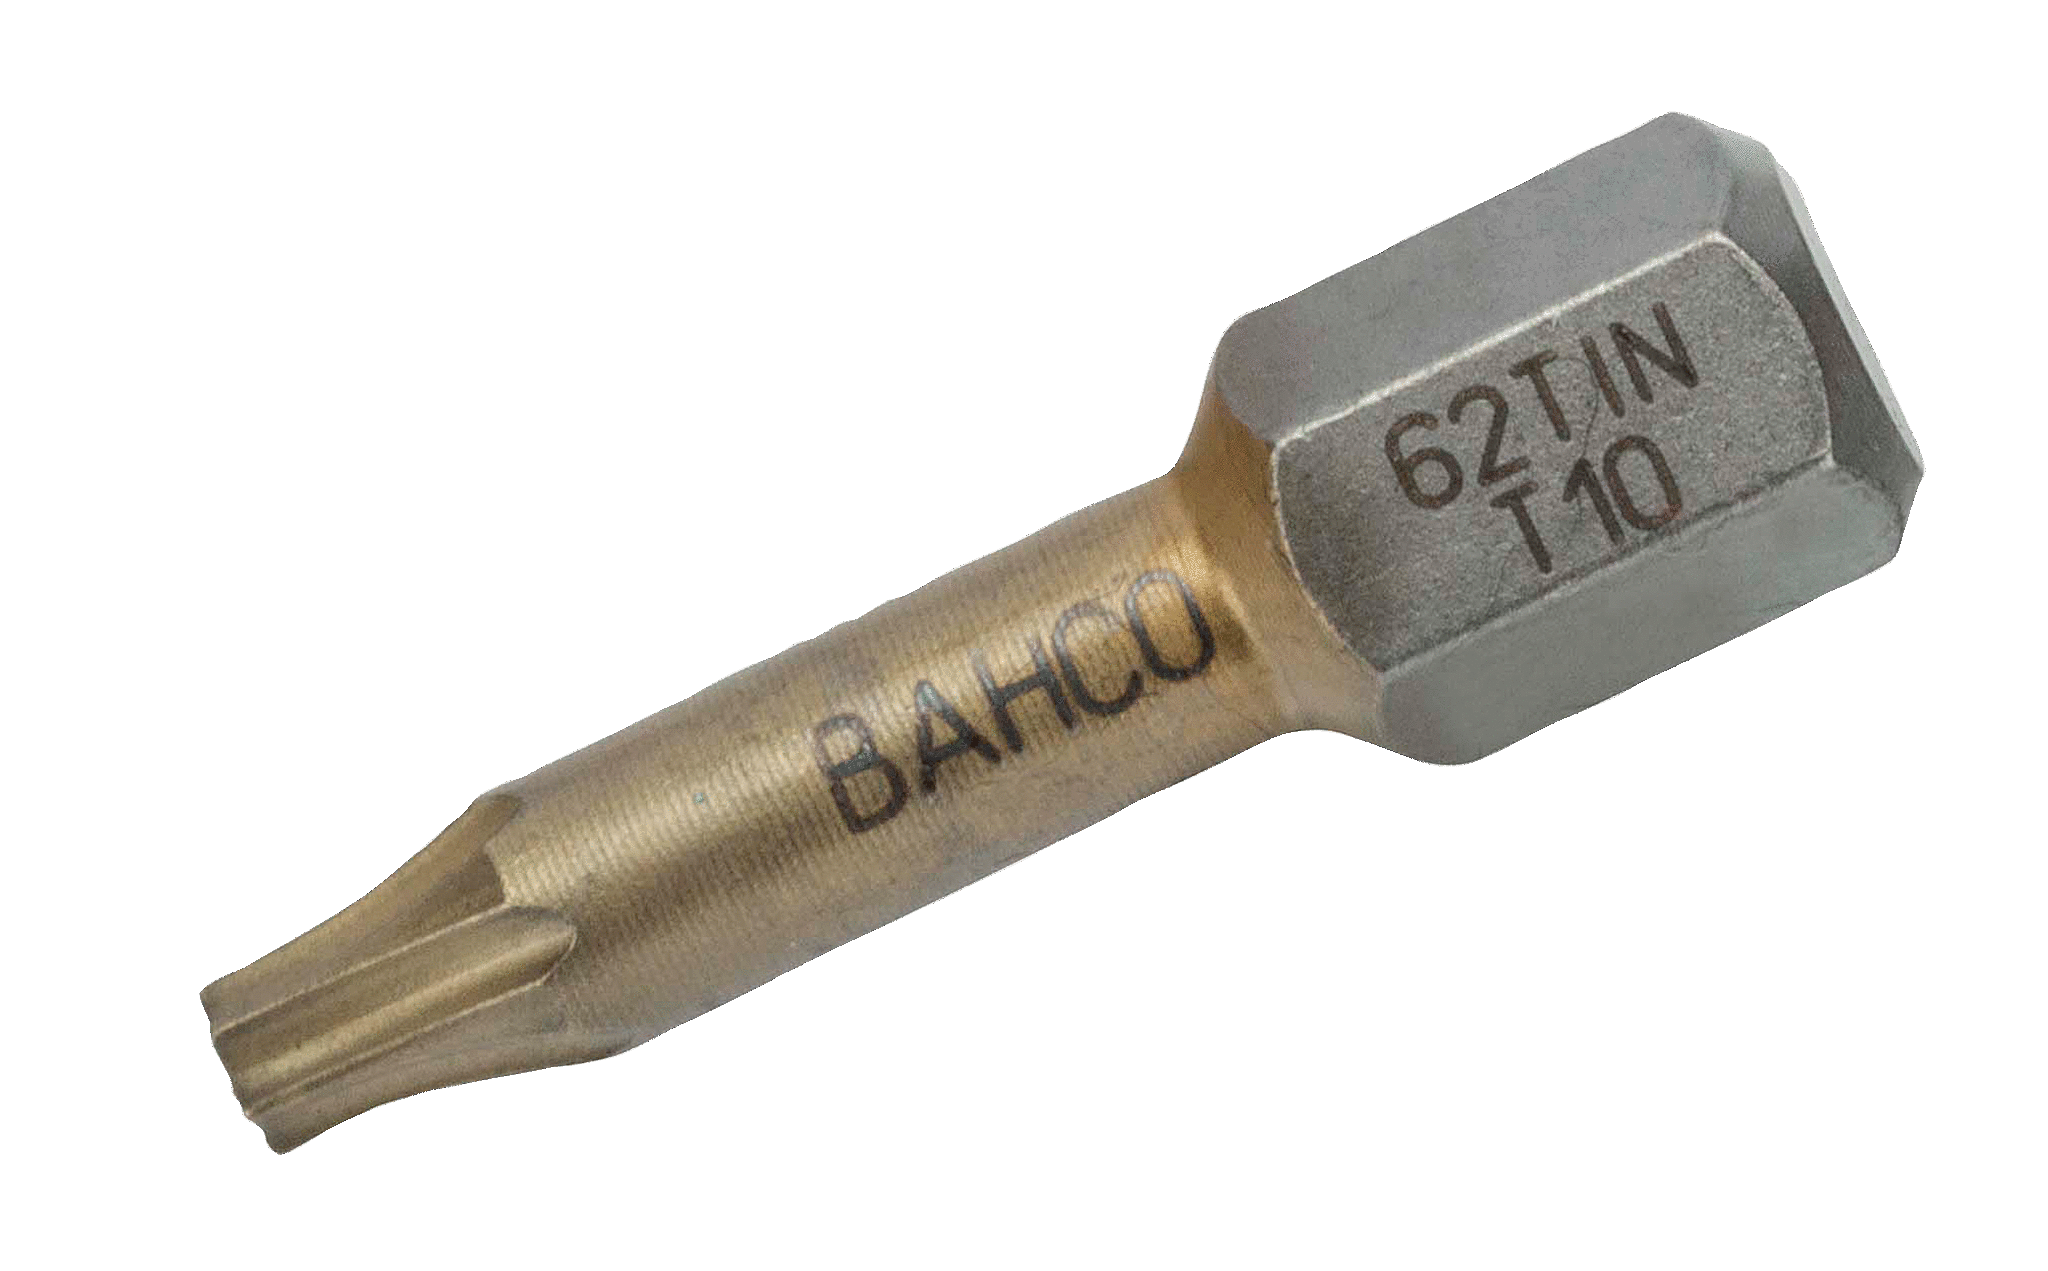 картинка Торсионные биты с покрытием из нитрида титана для отверток Torx®, 25 мм BAHCO 62TIN/T20 от магазина "Элит-инструмент"